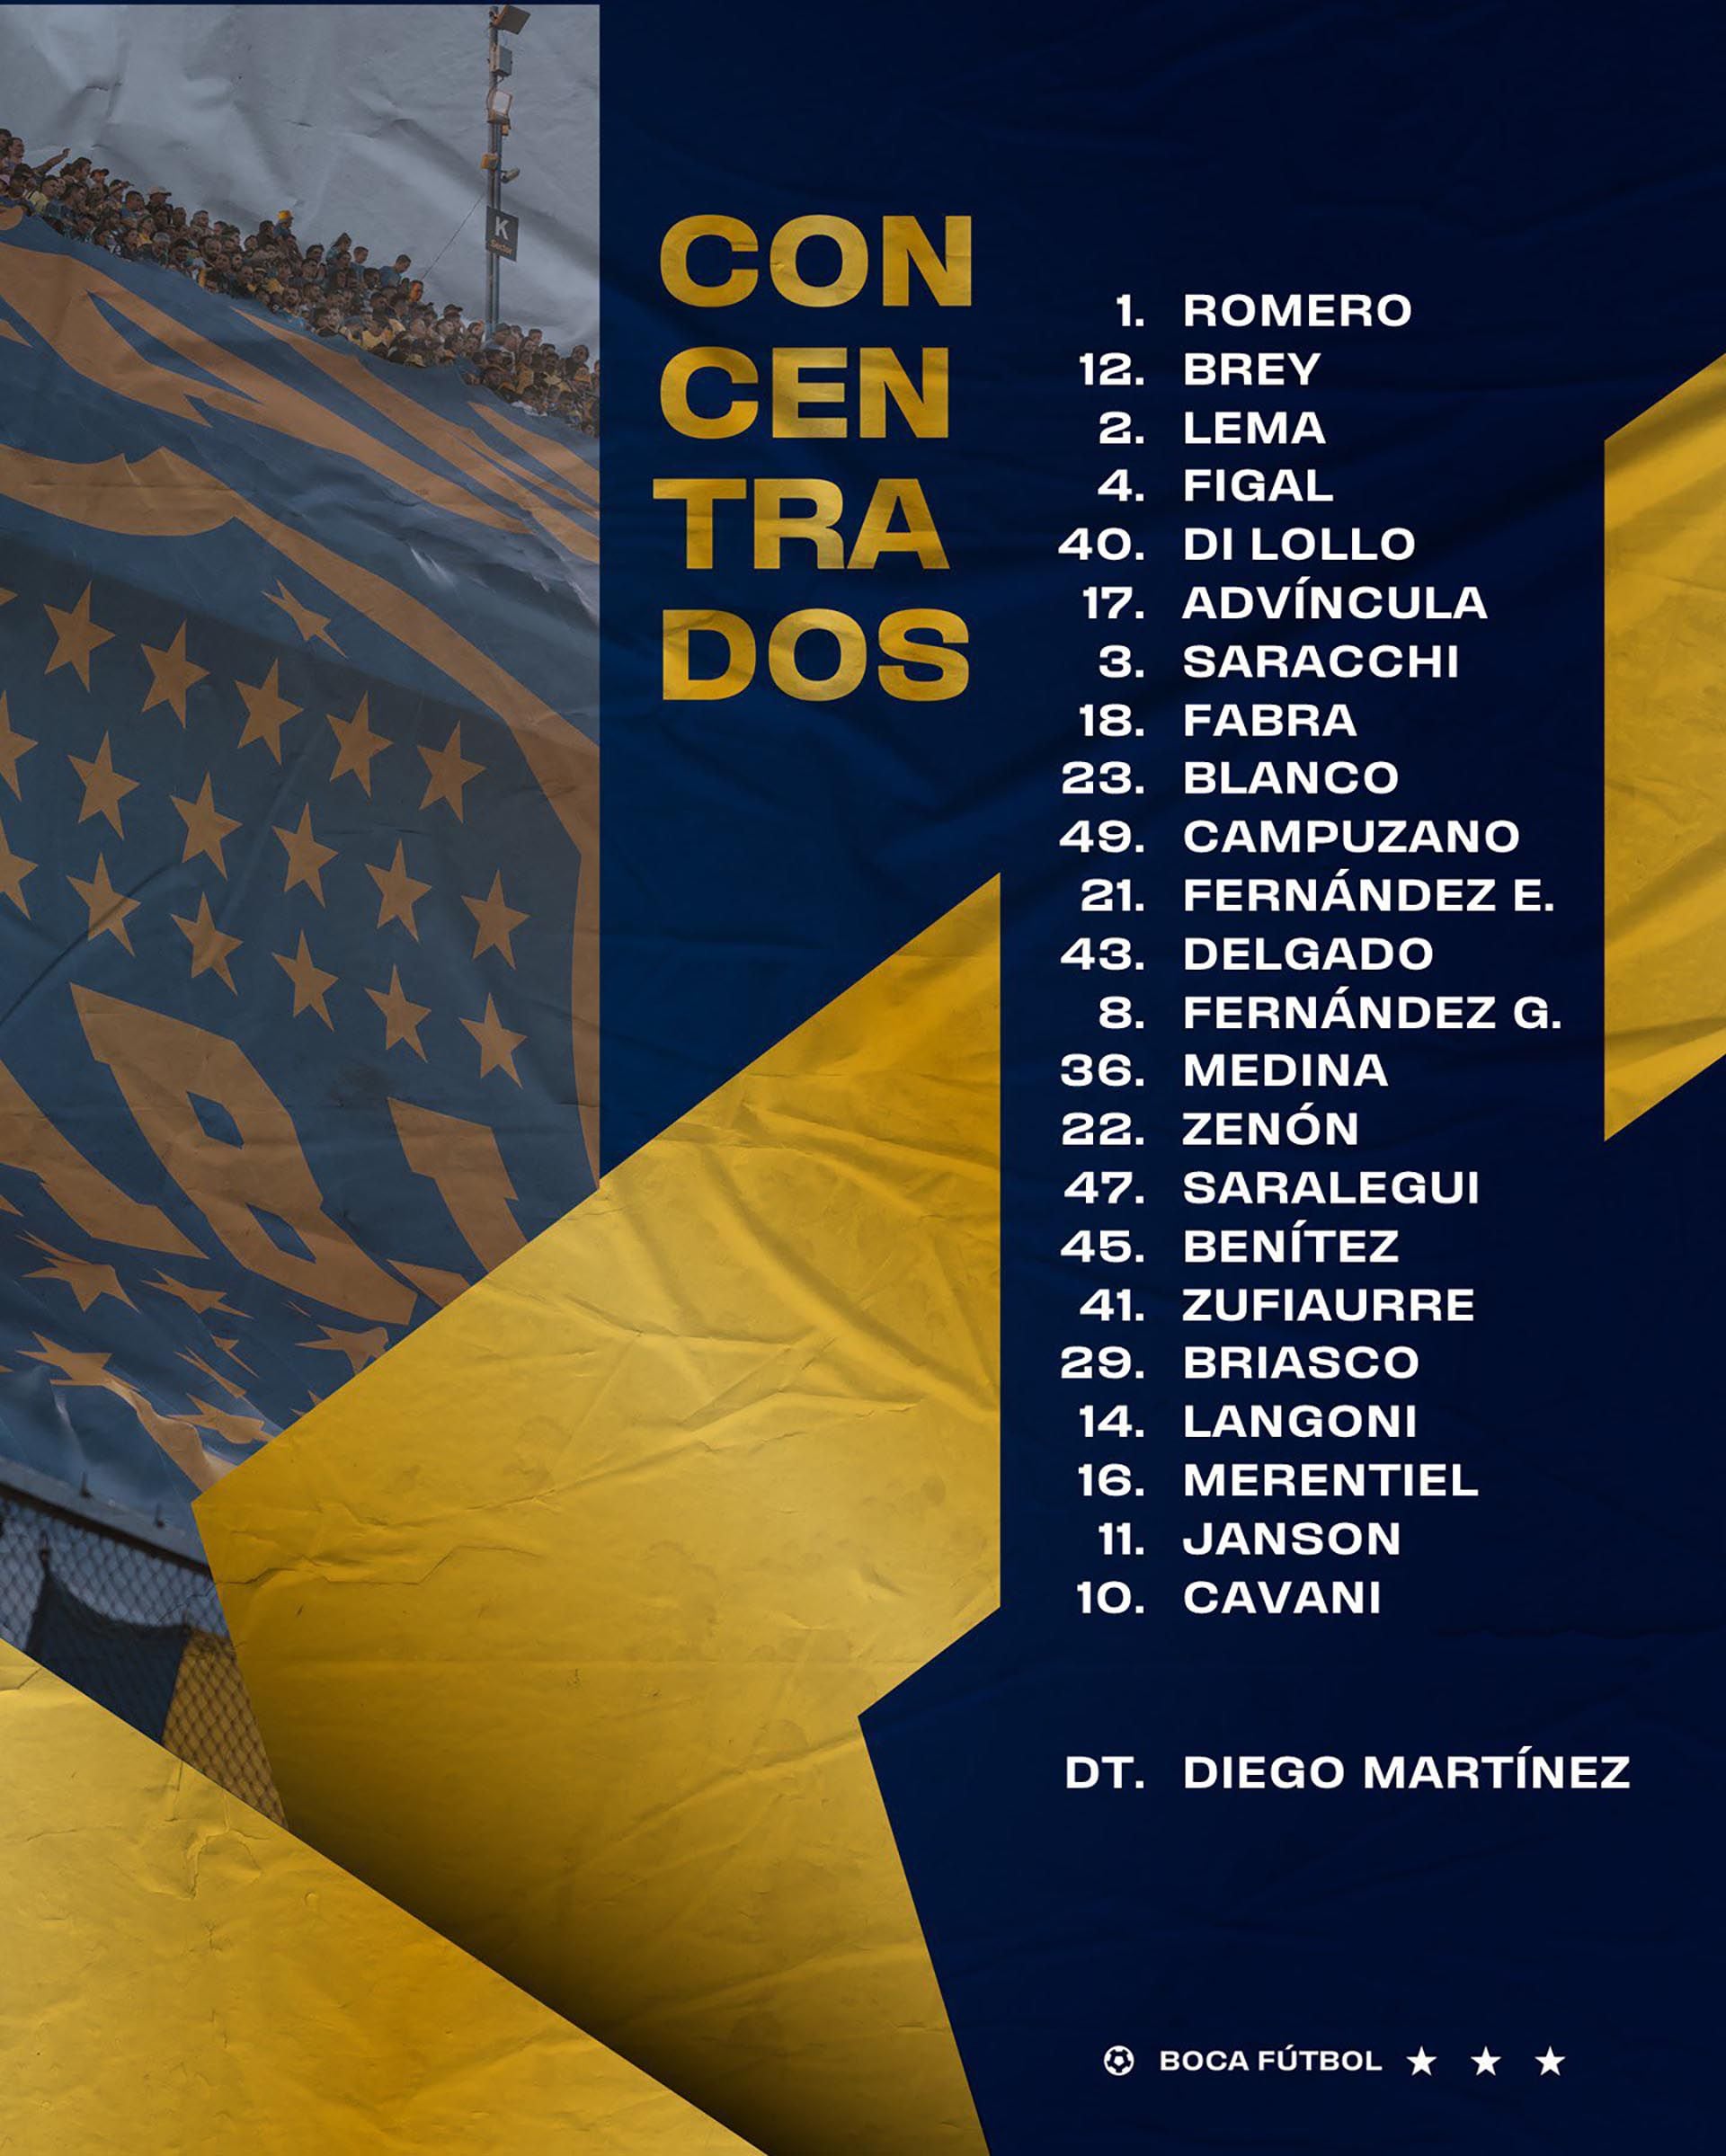 Los convocados de Boca Juniors